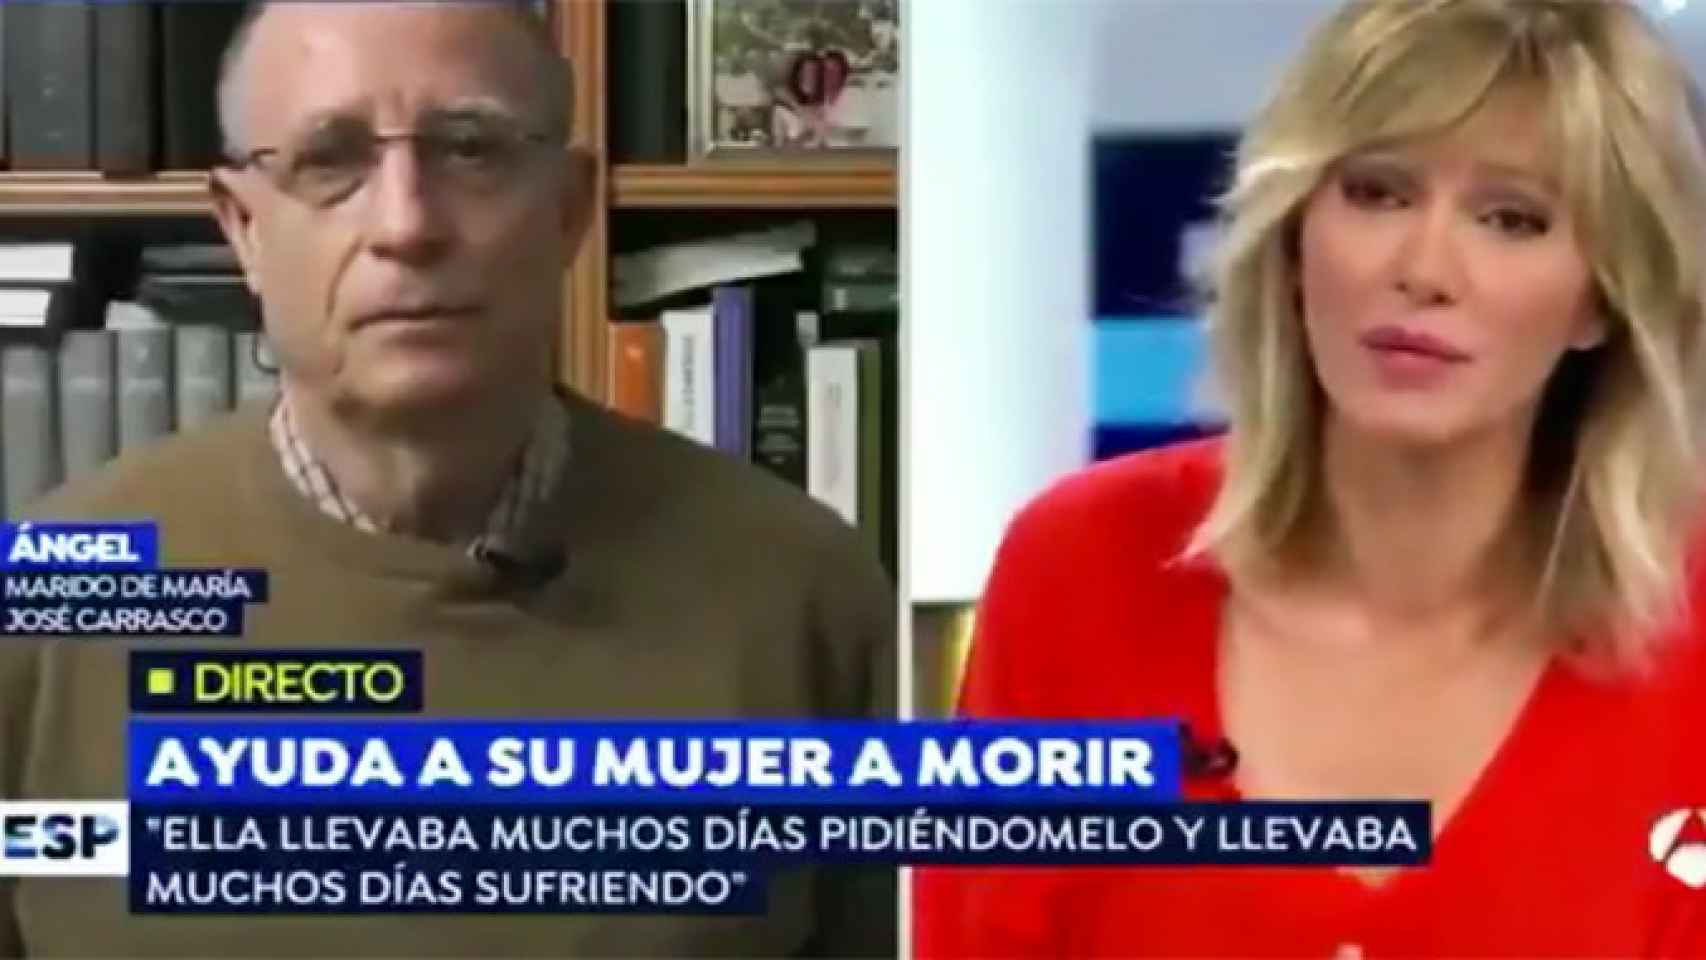 La presentadora Susana Griso (d) hablando con Ángel, que ayudó a morir a su mujer enferma / CG